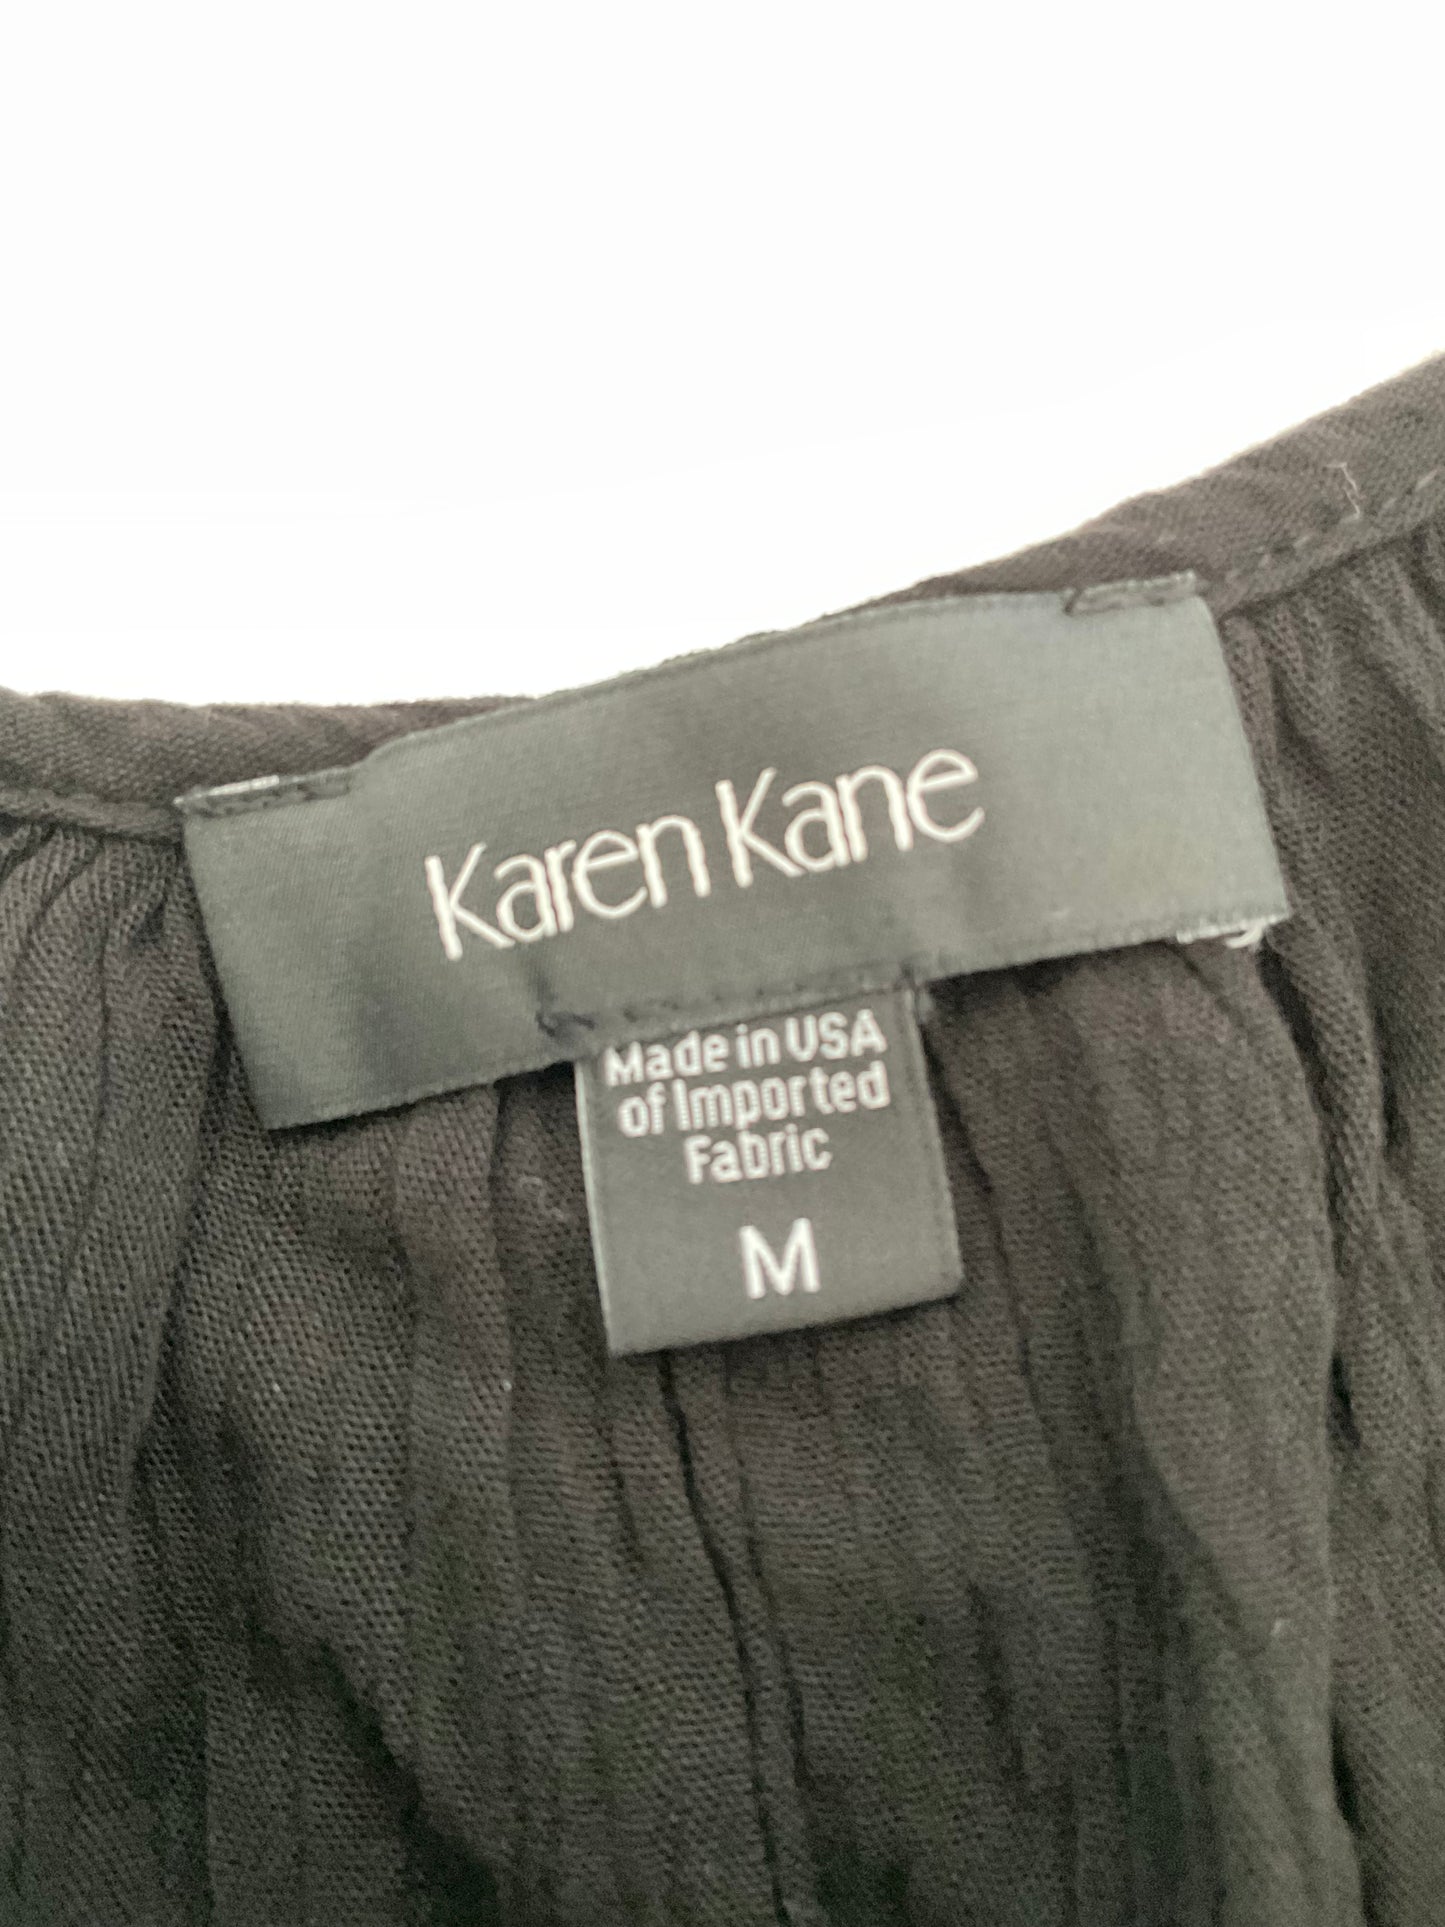 Karen Kane Dress